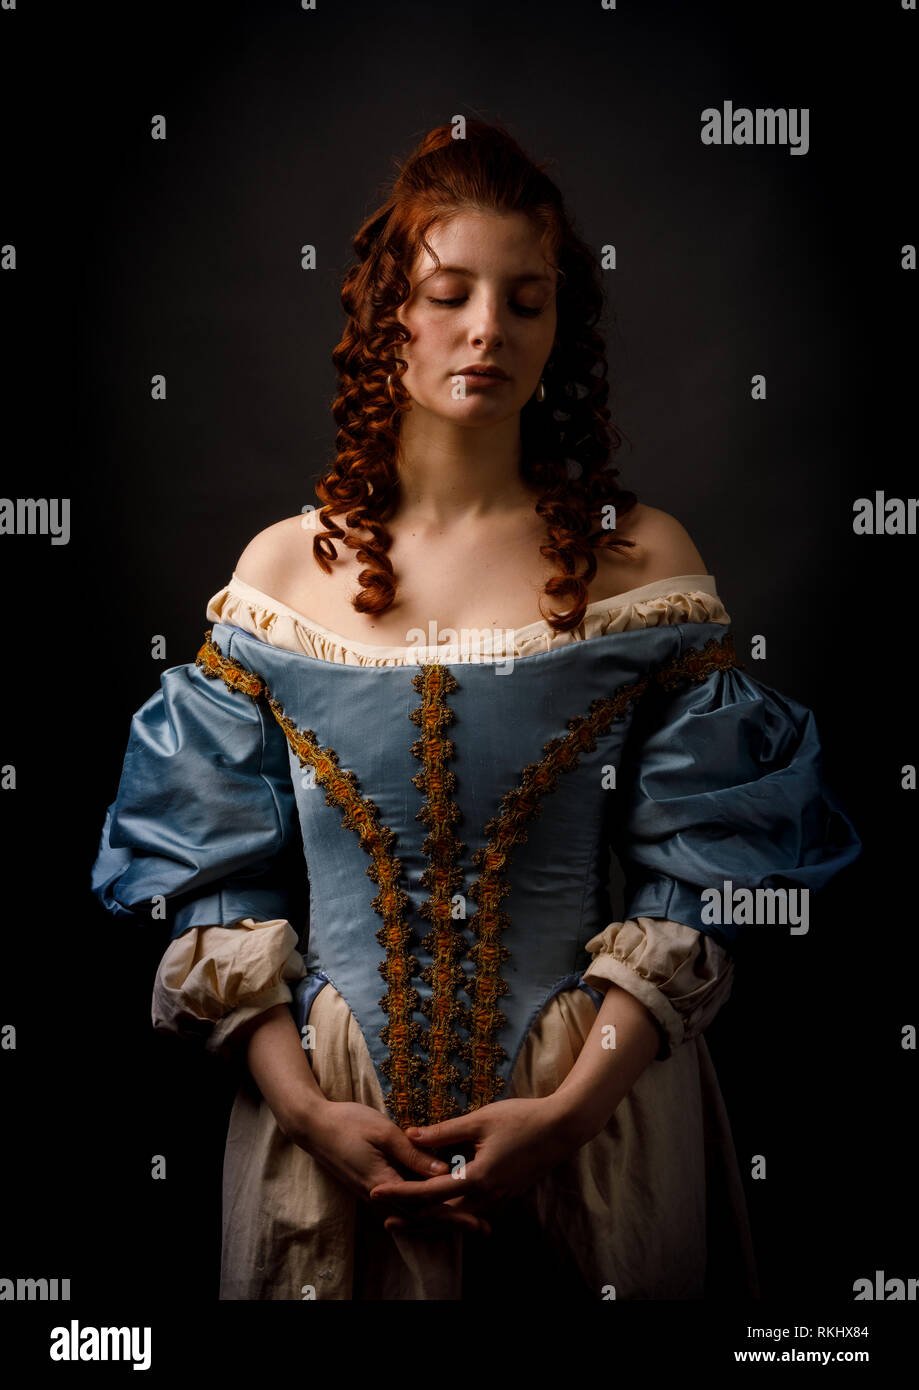 Mujer en la ropa medieval foto de archivo. Imagen de sentada - 29492960